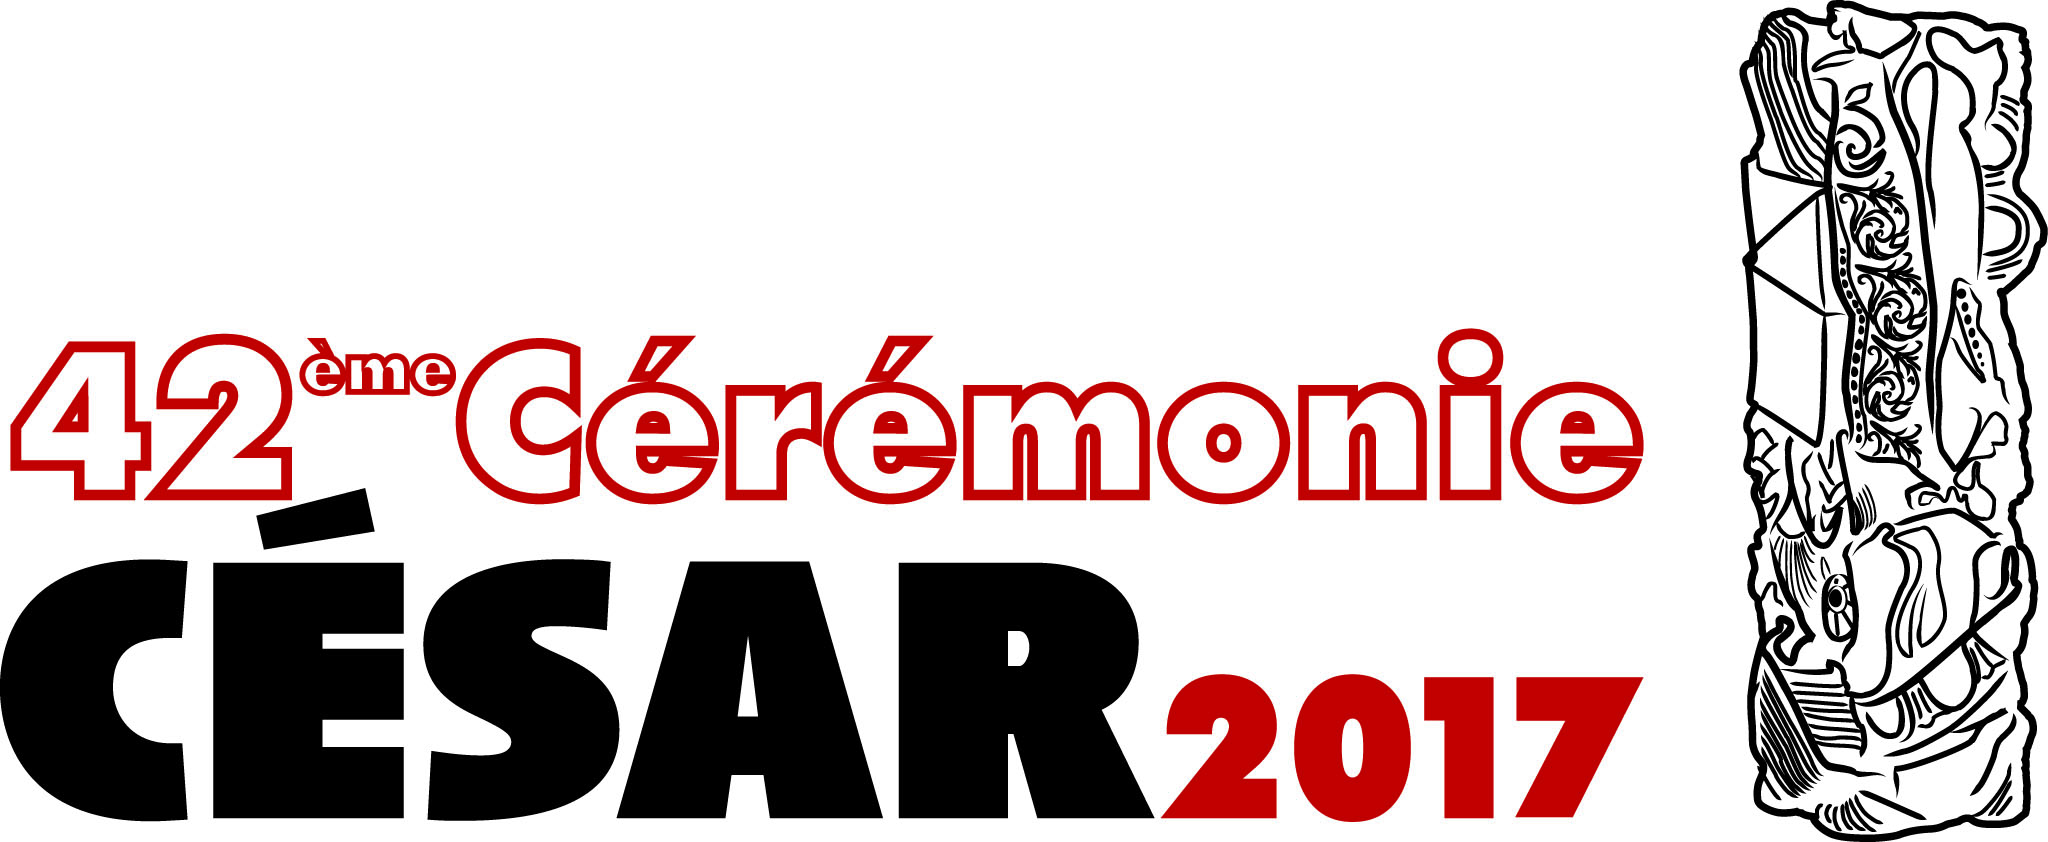 cesar-2017-logo